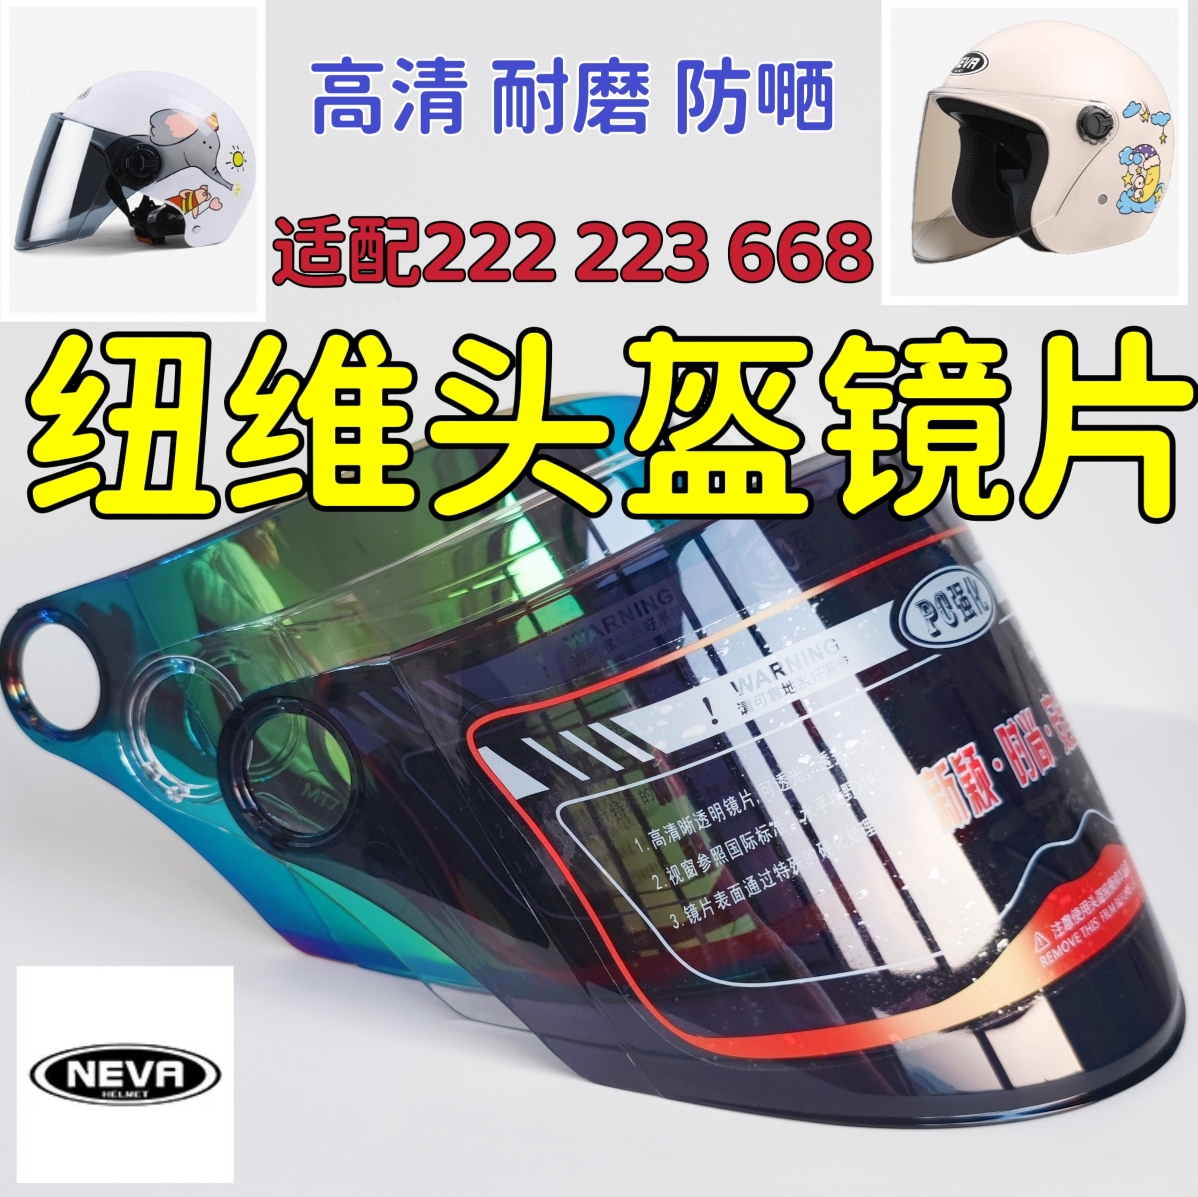 纽维NEVA-222 223 668头盔镜片高清耐磨防晒面罩挡风配件通用美团